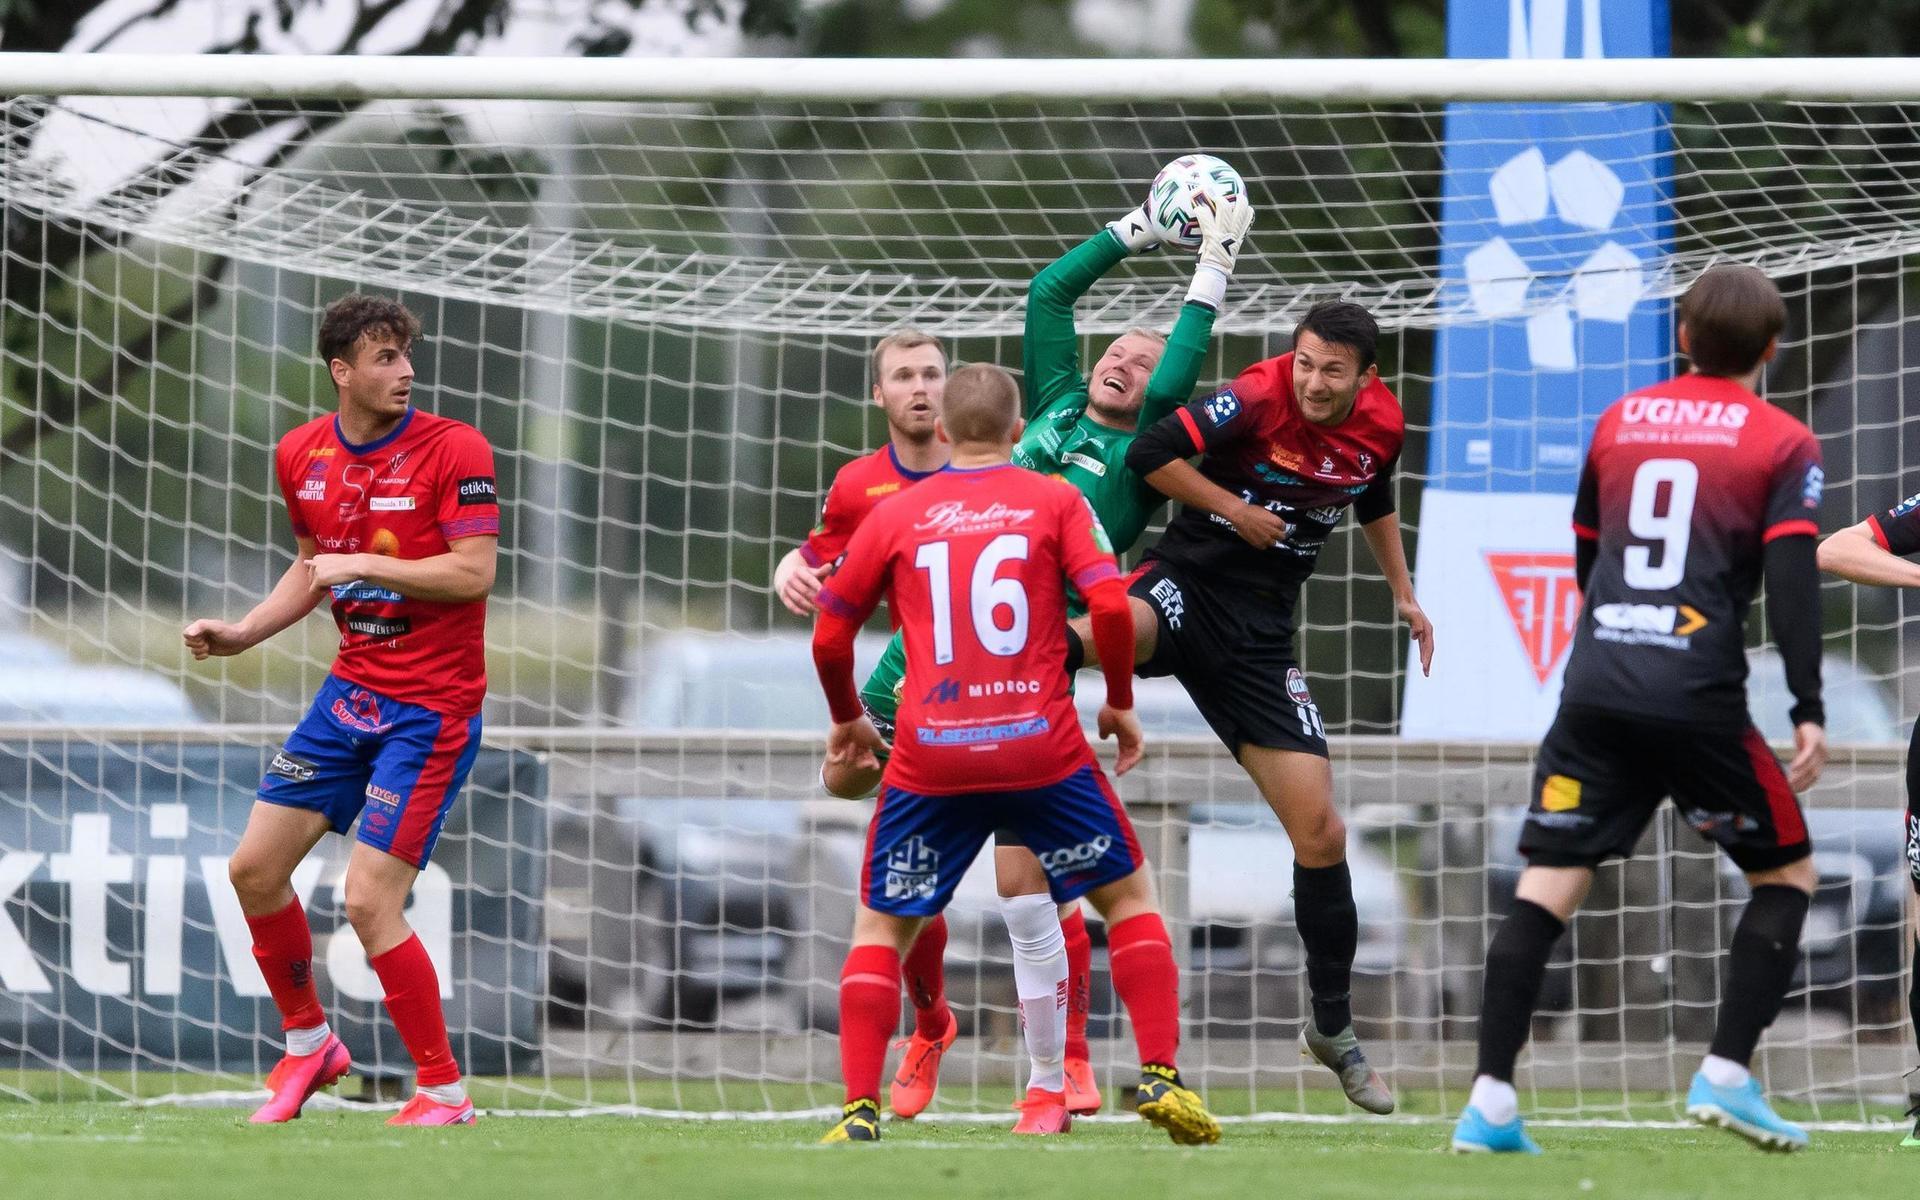 Tvååkers målvakt Johan Ekelundh under fotbollsmatchen i Division 1 södra mellan Tvååker och Trollhättan den 1 juli 2020 i Tvååker.